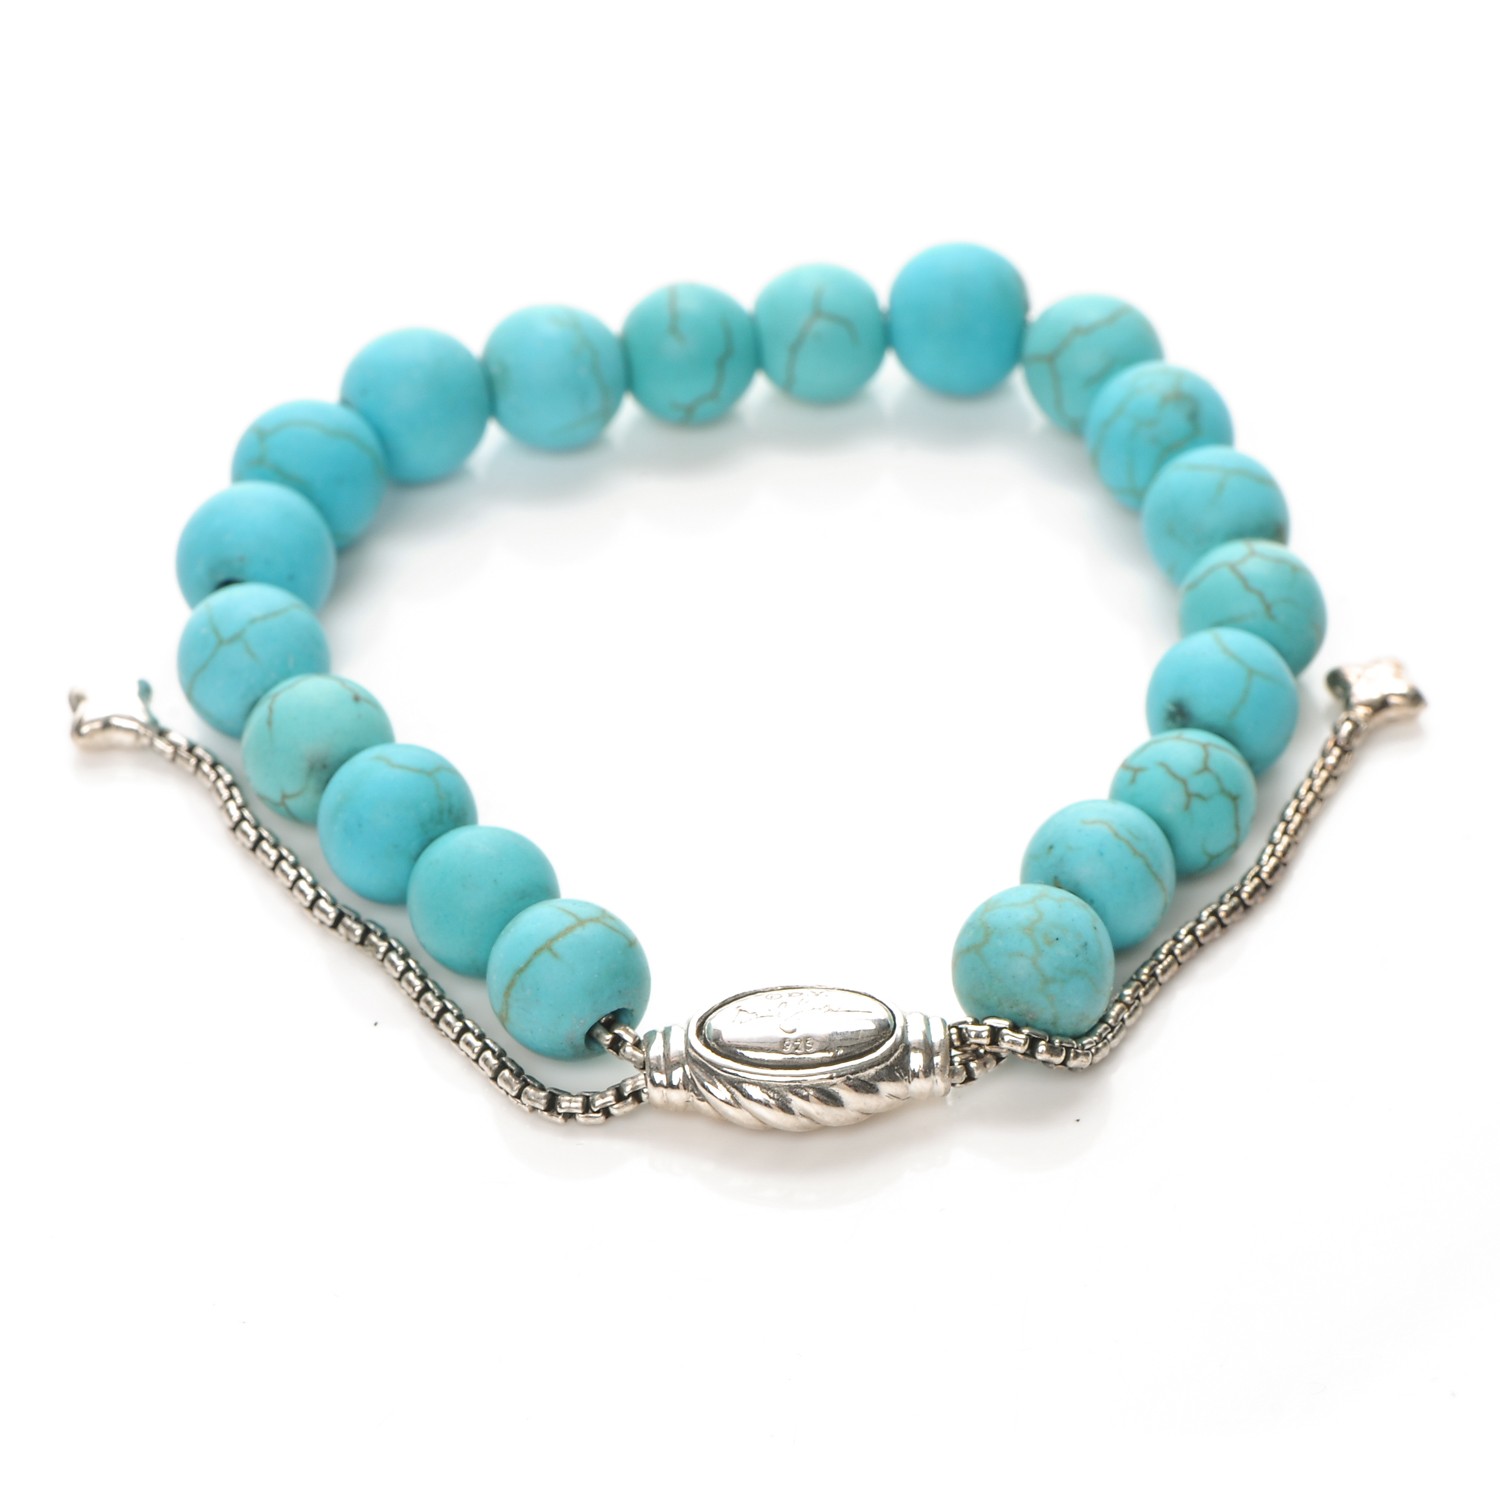 DAVID YURMAN Sterling Silver Turquoise Spiritual Beads 8mm Bracelet 202146